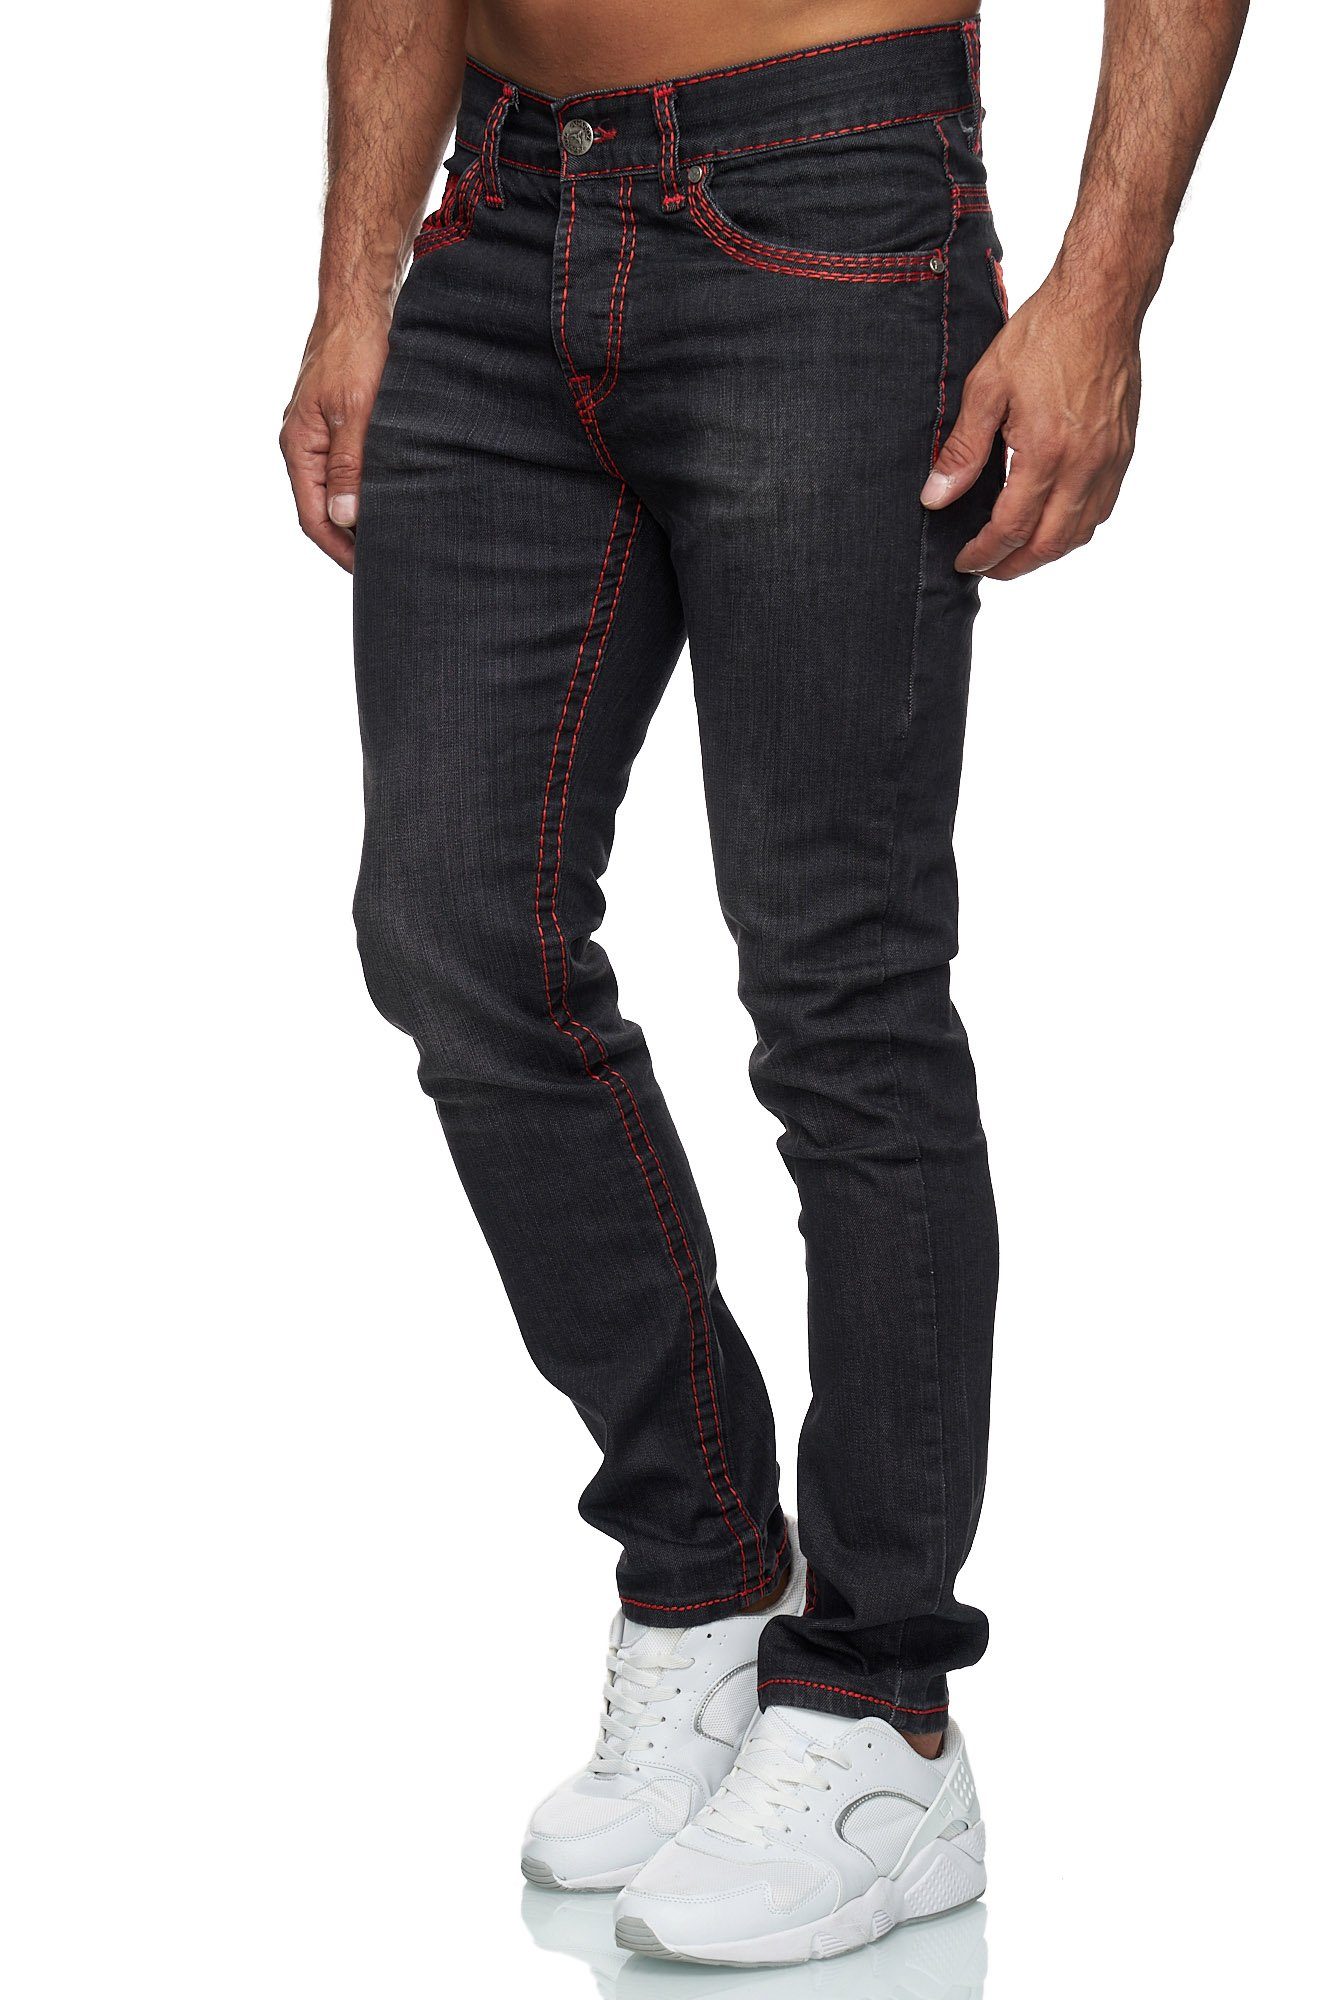 Schwarz_Rot Baxboy Straight 9574 Dicke Stonewashed Jeans Neon-Naht Fit Stretch Denim Herren Regular-fit-Jeans